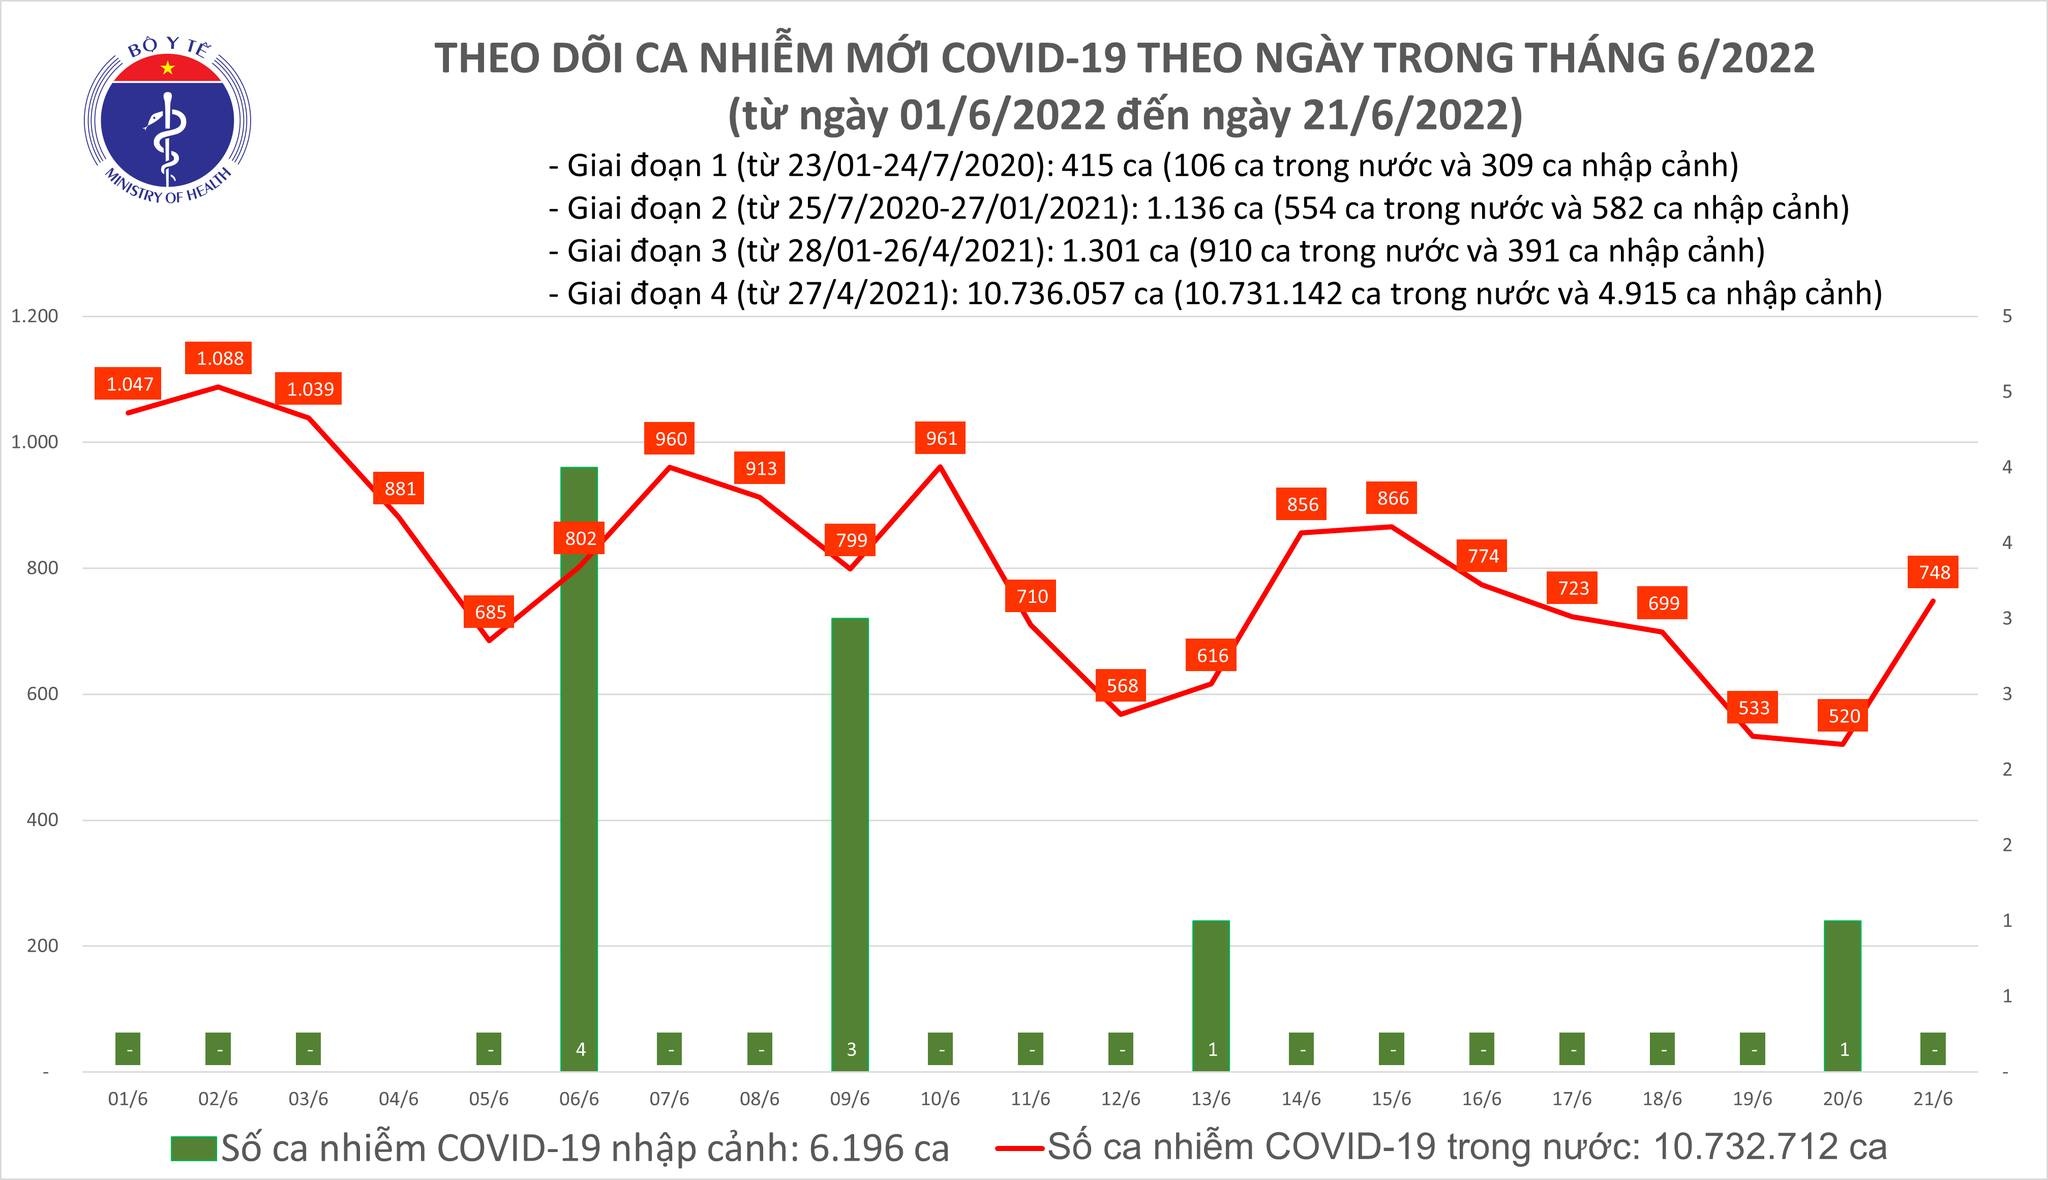 Việt Nam ghi nhận 748 ca mắc mới COVID-19 trong ngày 21/6